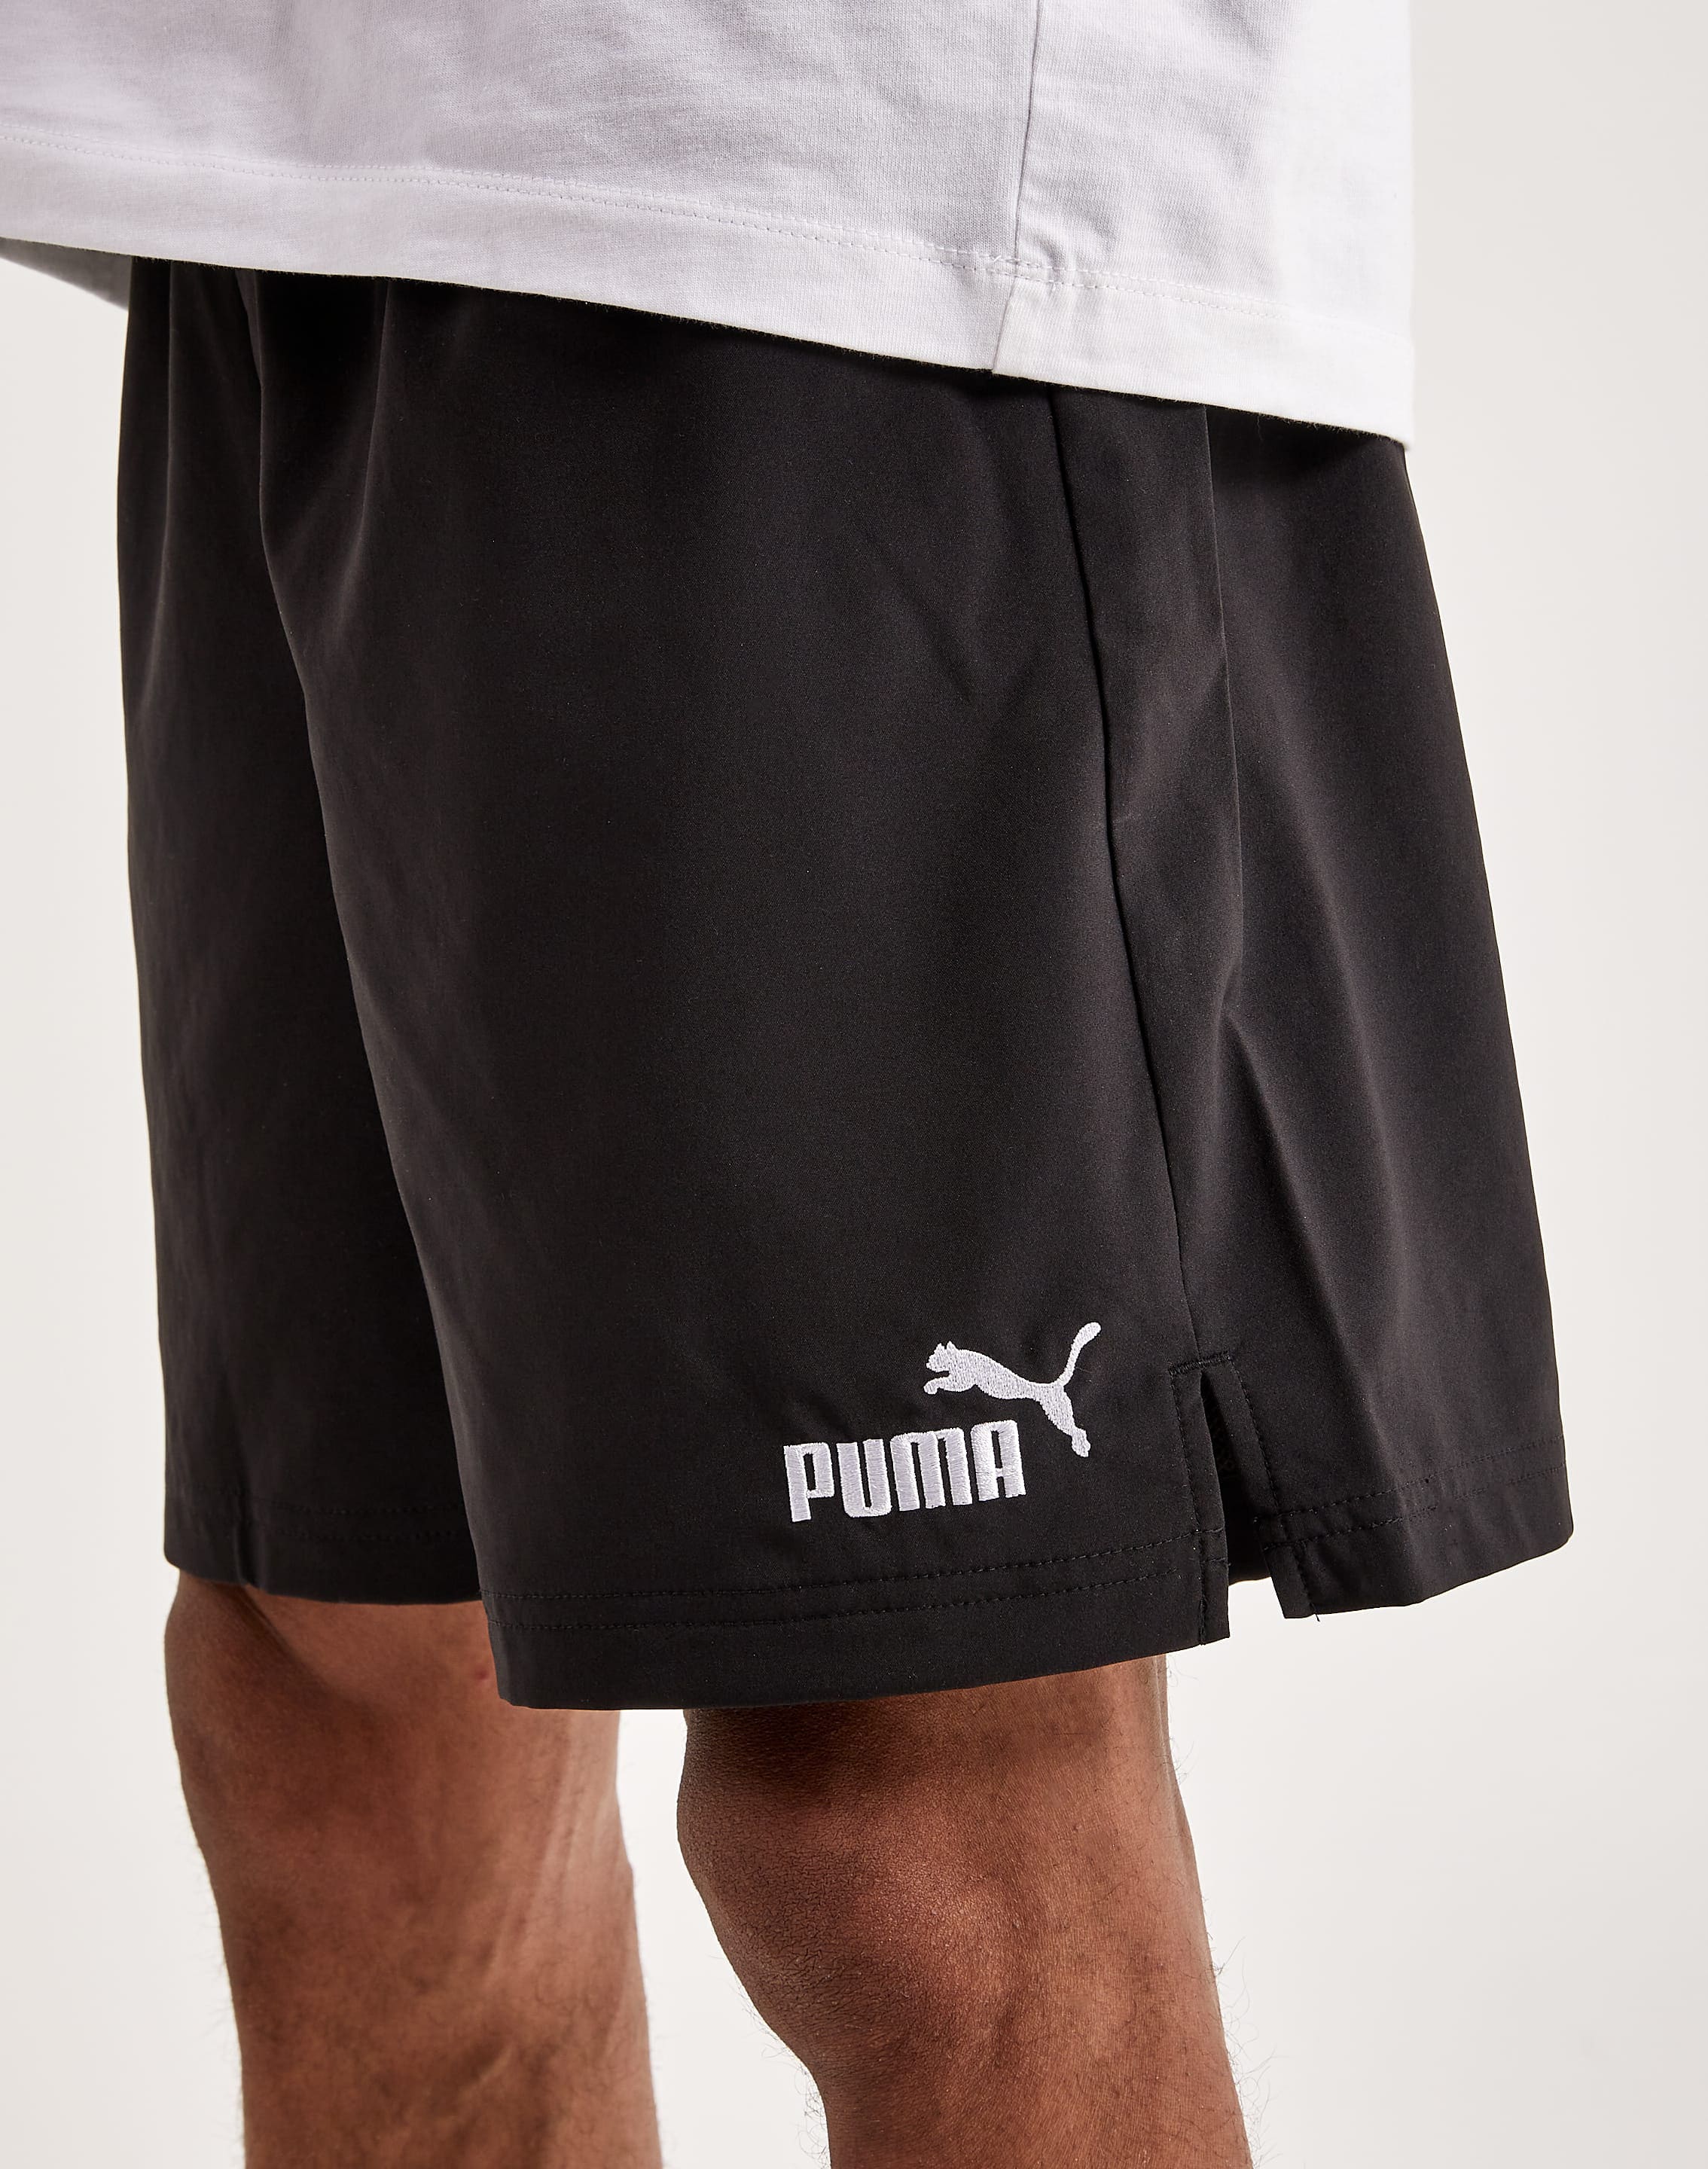 Puma Essentials – Woven DTLR Shorts